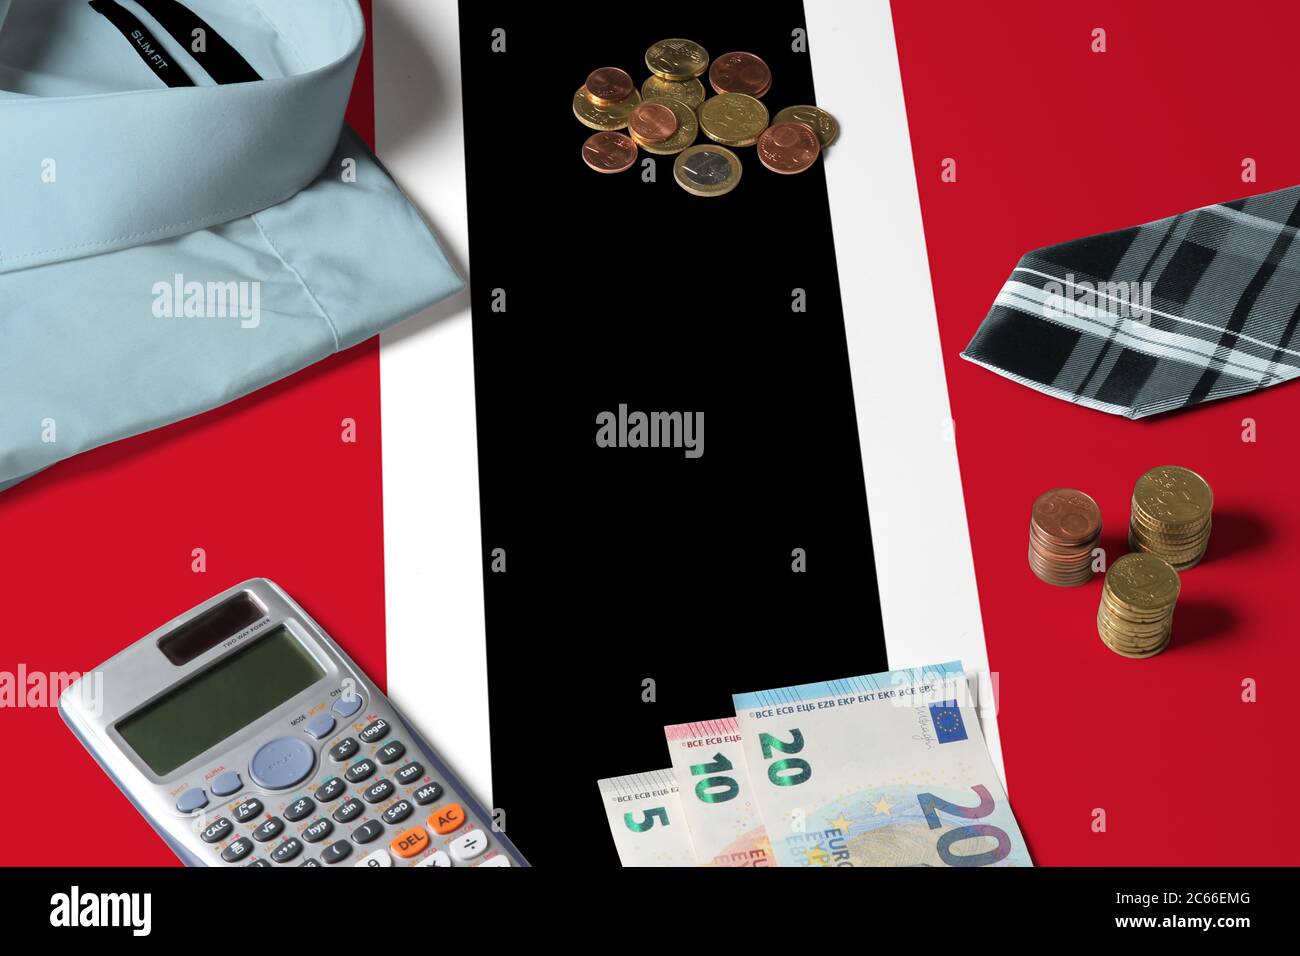 Trinidad und Tobago Flagge auf Minimal Money Concept Table. Münzen und Finanzobjekte auf Flaggenoberfläche. Thema der Volkswirtschaft. Stockfoto